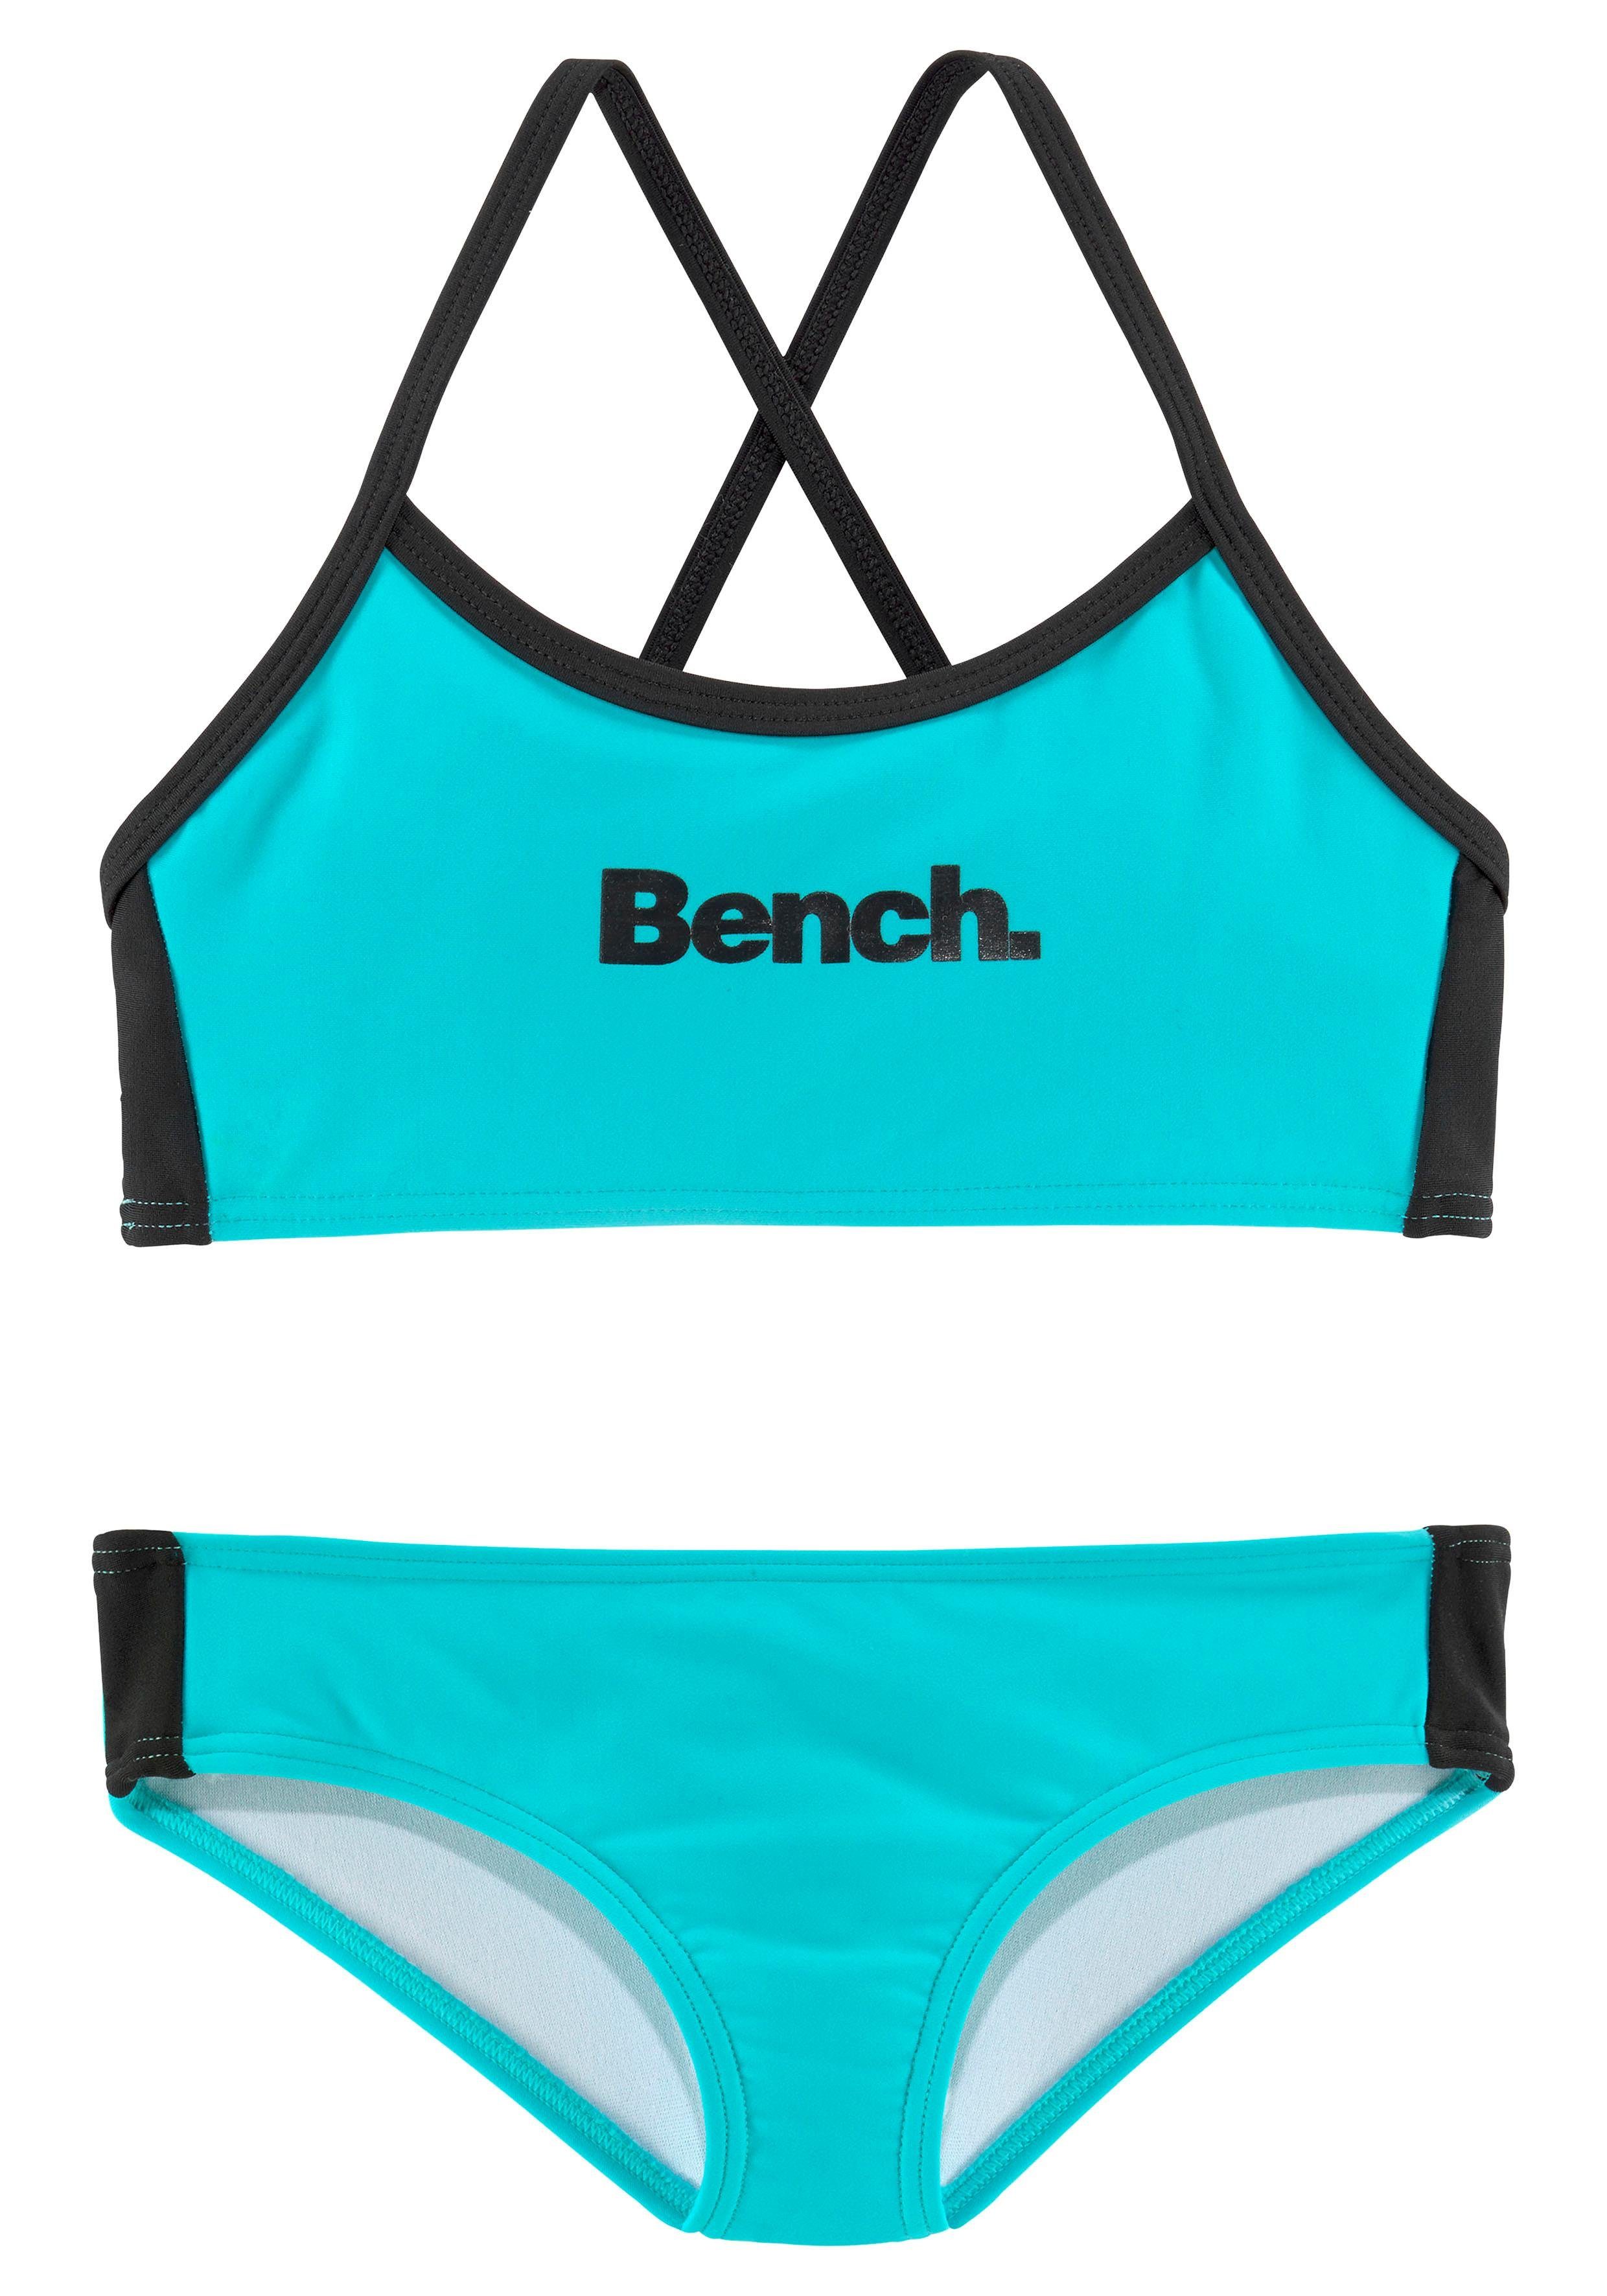 Bench. Bustier-Bikini mit gekreuzten Trägern türkis-schwarz